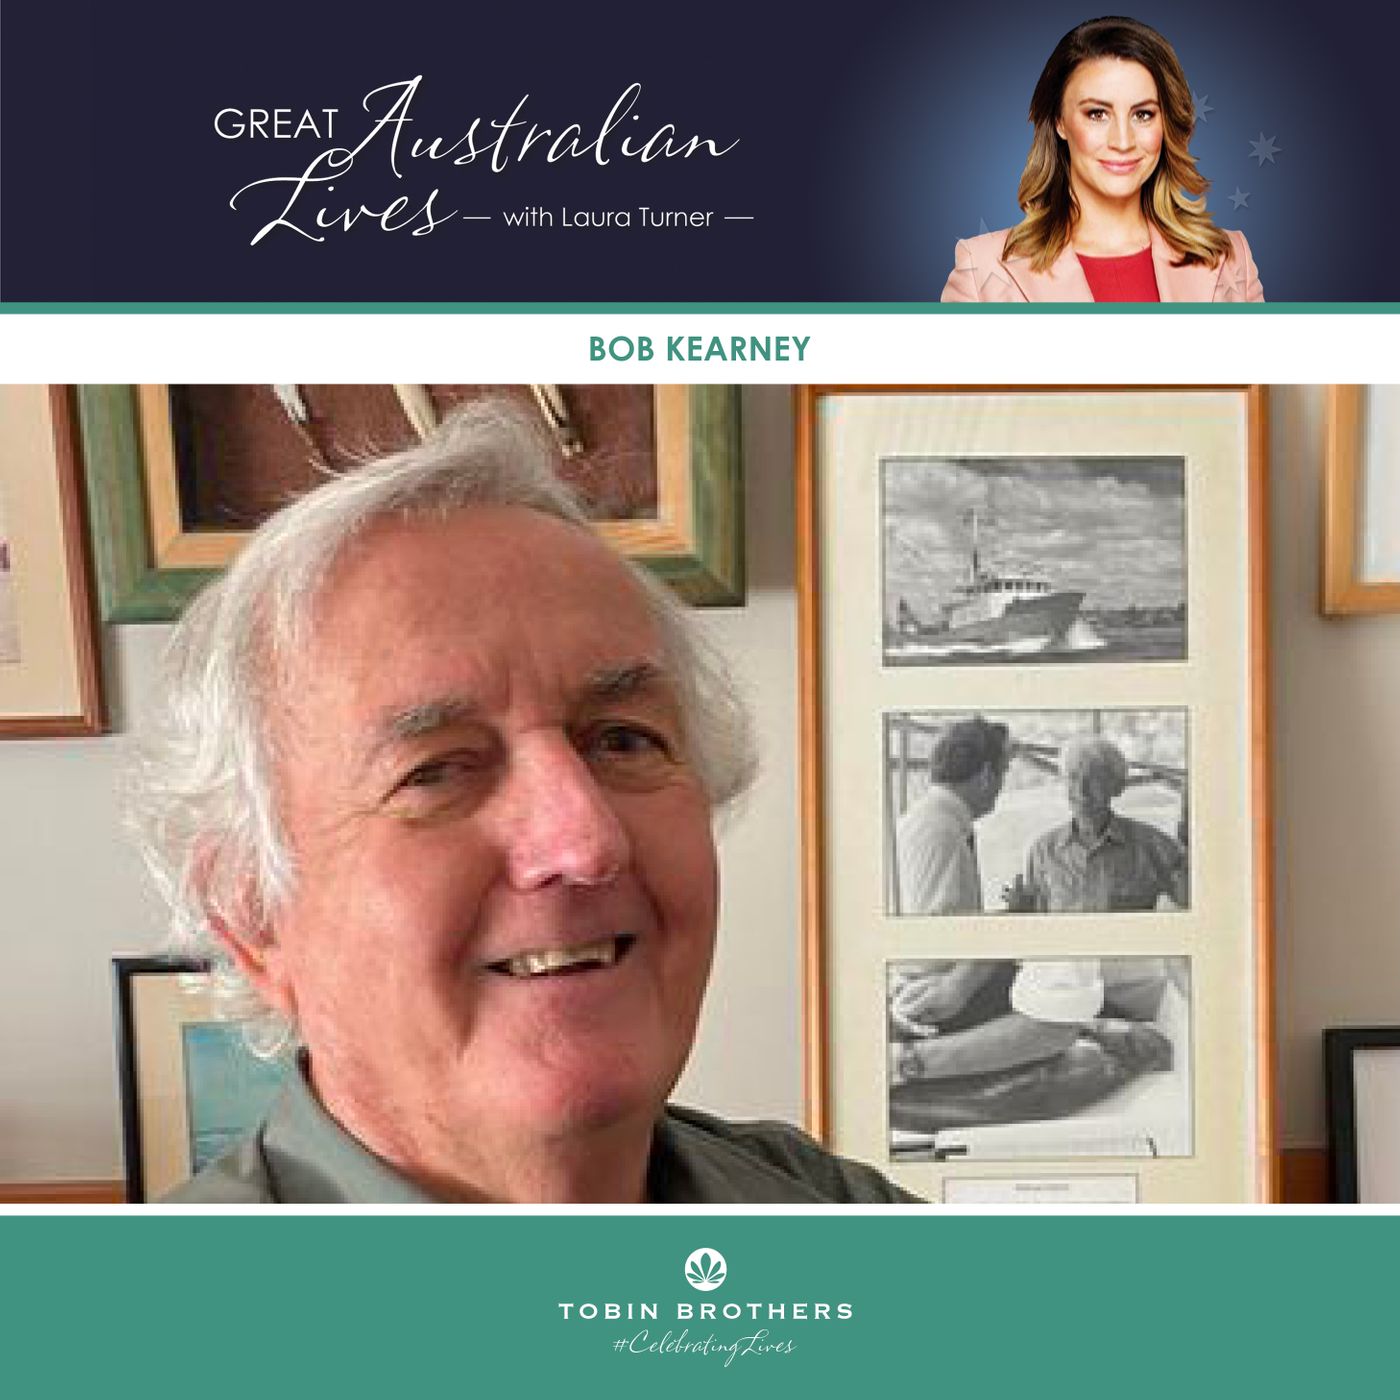 Bob Kearney's Great Australian Life